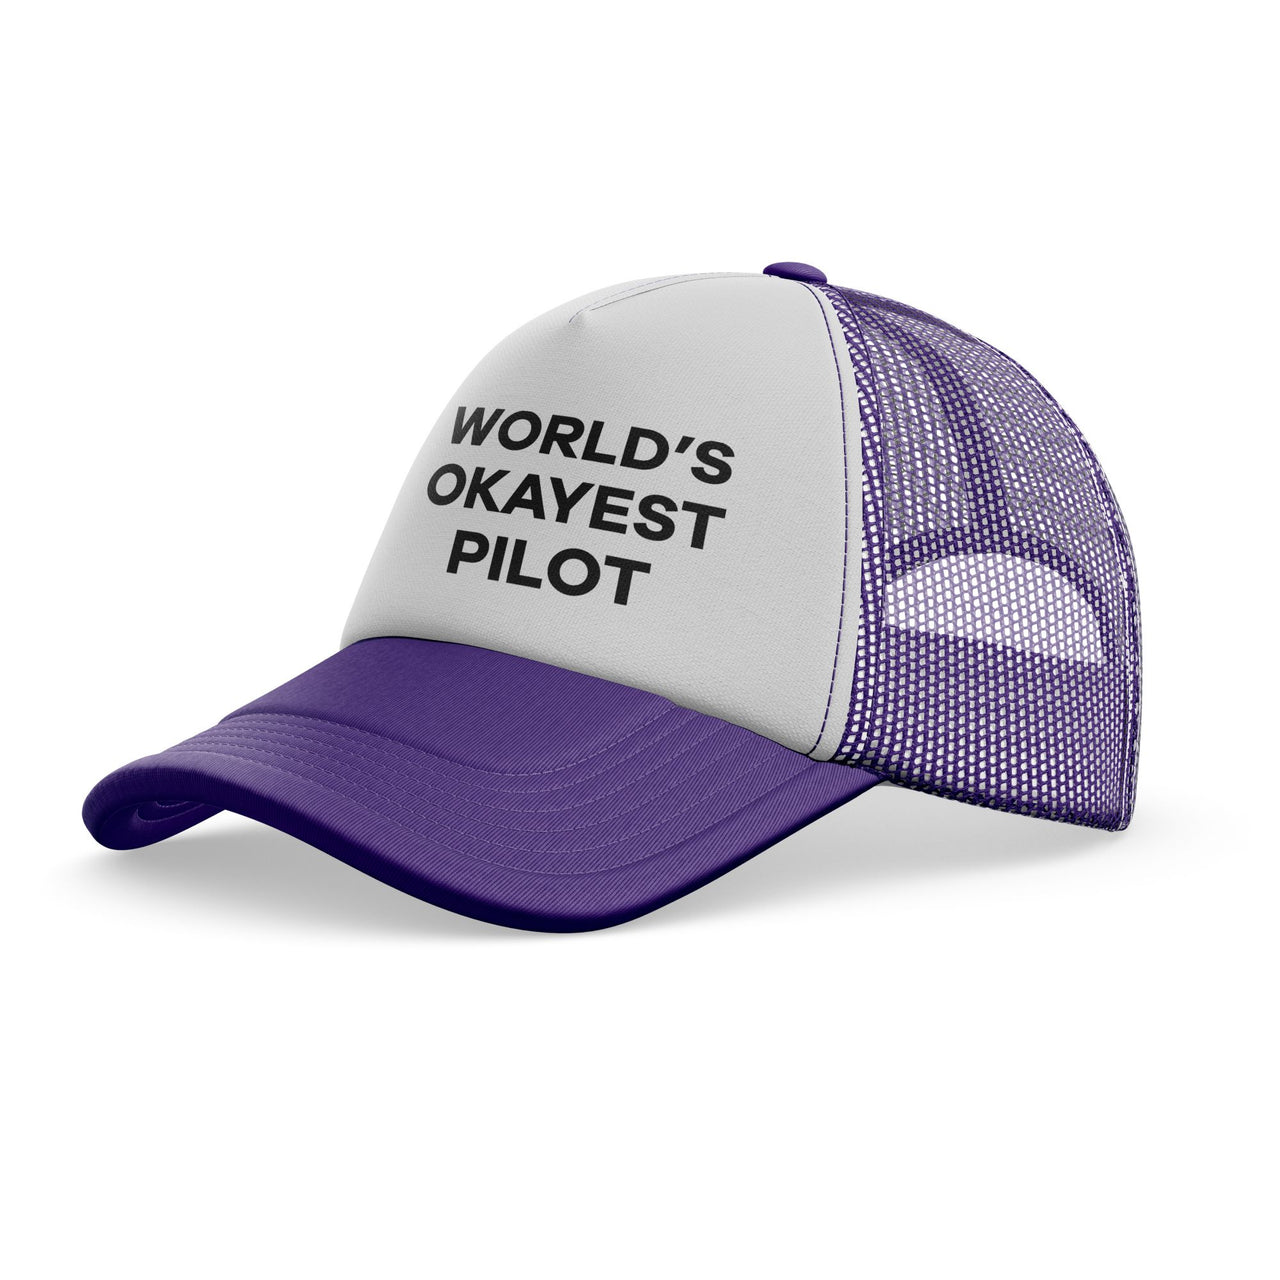 World's Okayest Pilot Designed Trucker Caps & Hats